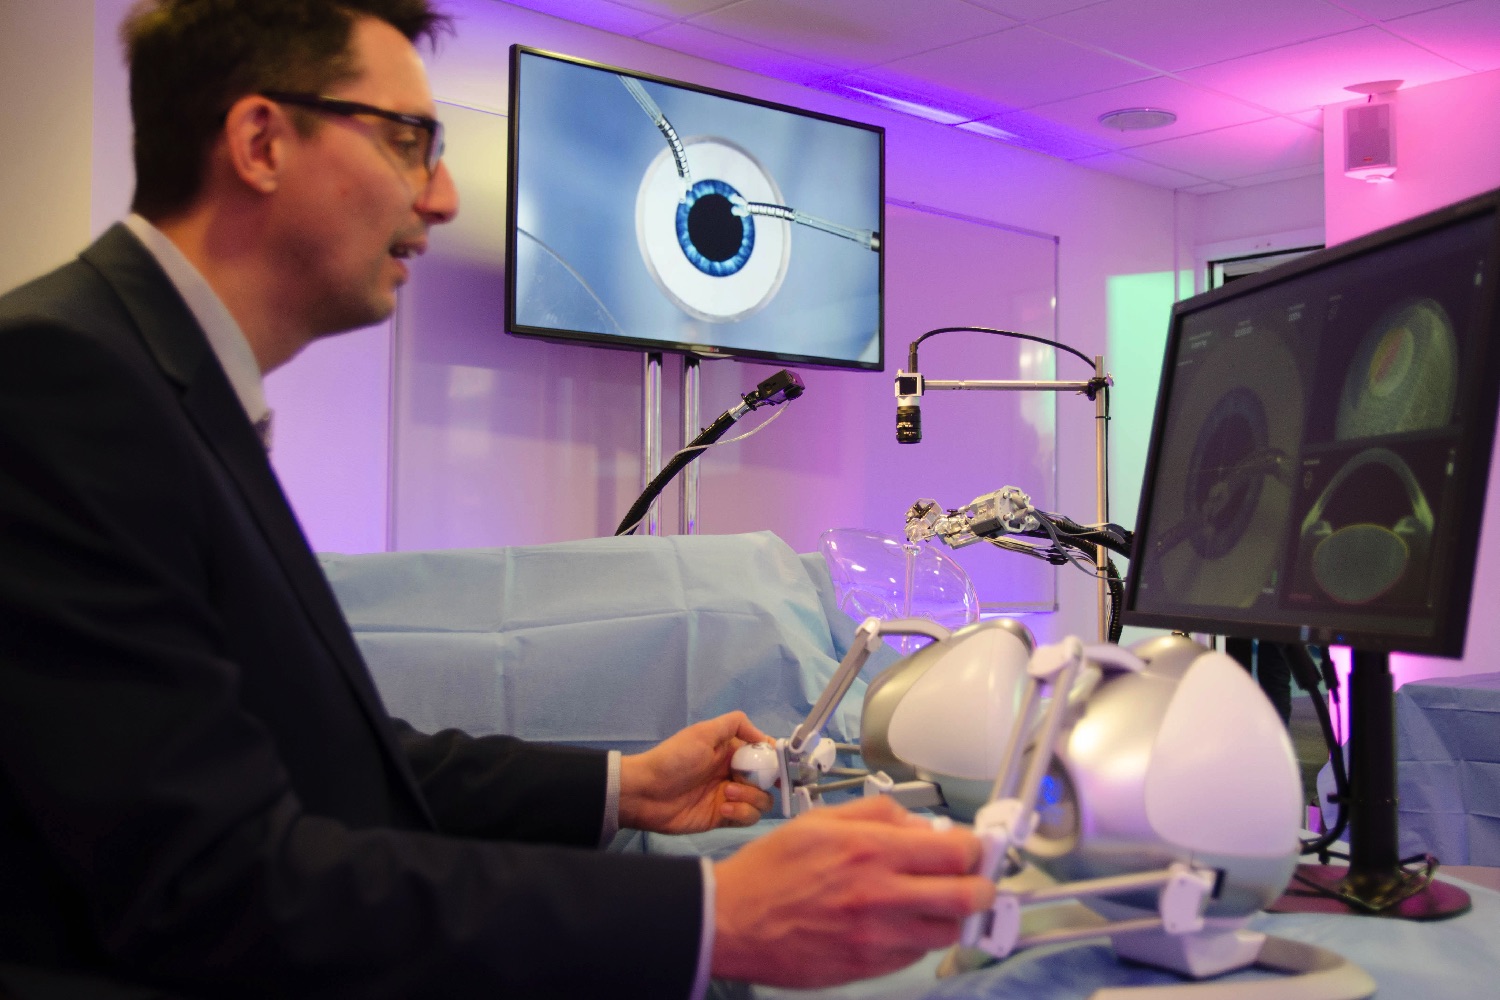 cataract surgery robot axsis